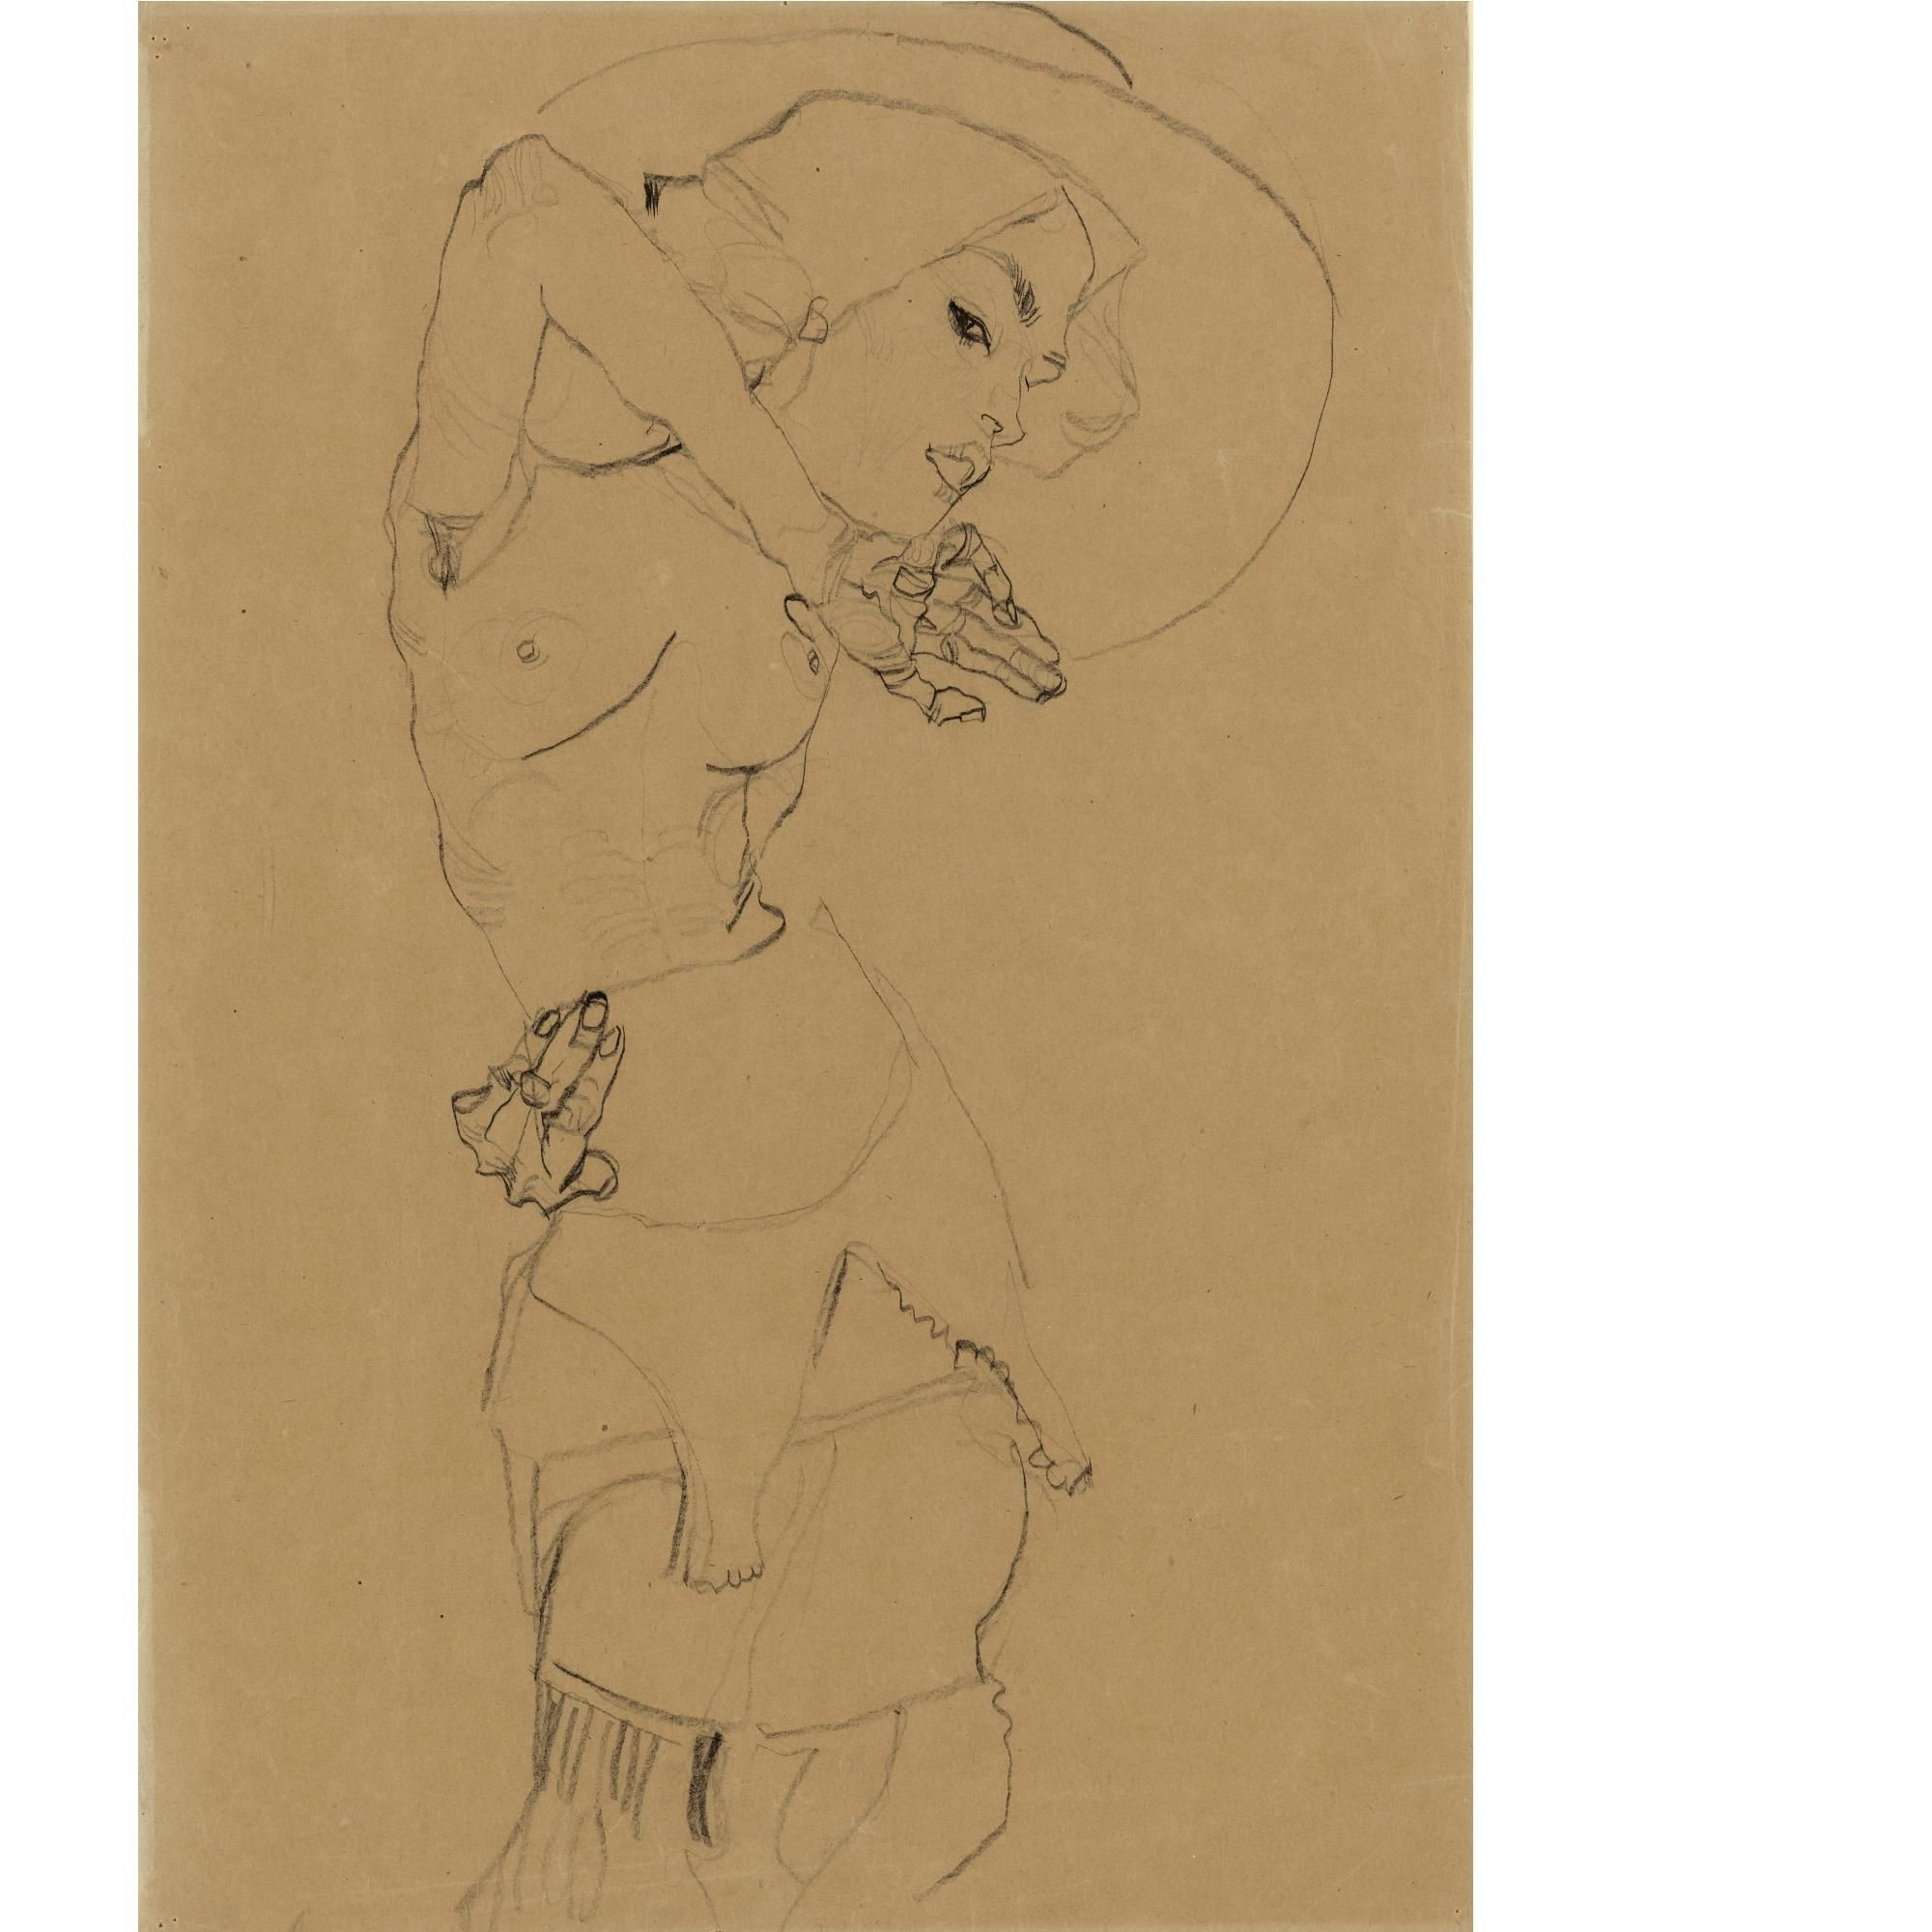 Stehender Akt mit grossem Hut (Gertrude Schiele) Standing nude with large hat (Gertrude Schiele) by Egon Schiele, FullFormat:,year,1910